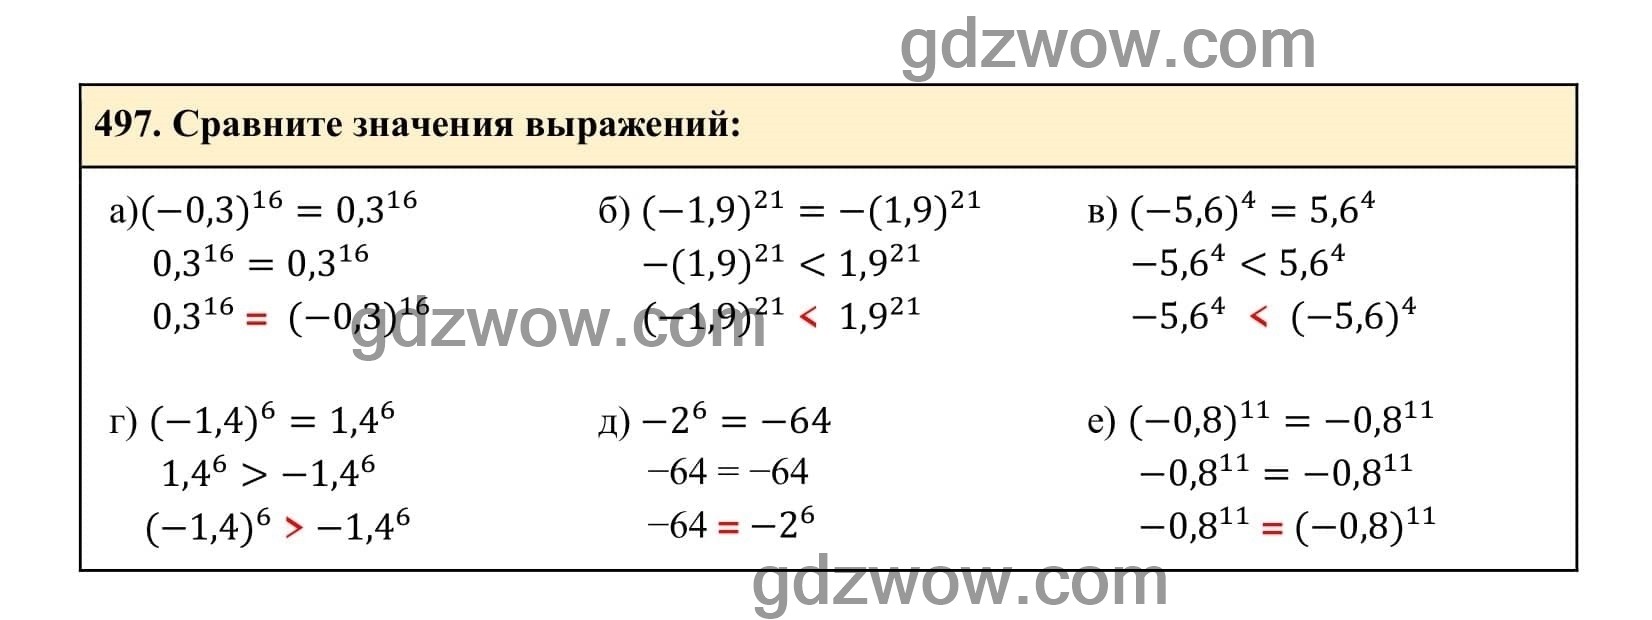 Упражнение 497 - ГДЗ по Алгебре 7 класс Учебник Макарычев (решебник) - GDZwow